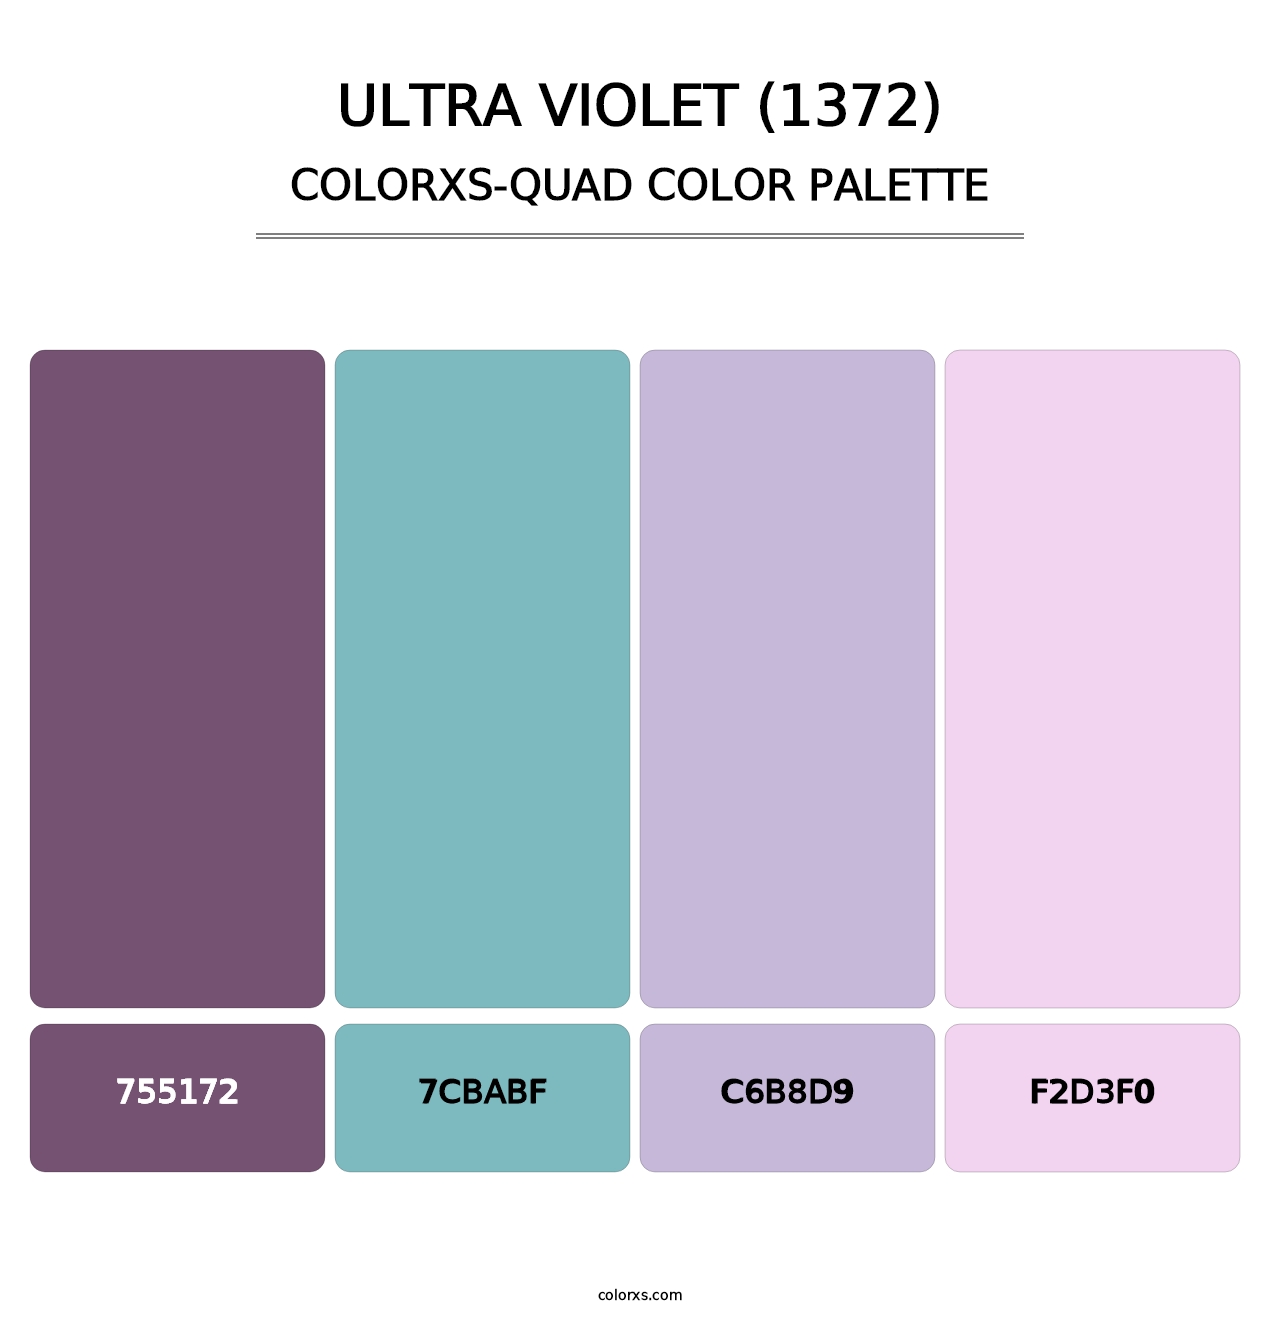 Ultra Violet (1372) - Colorxs Quad Palette